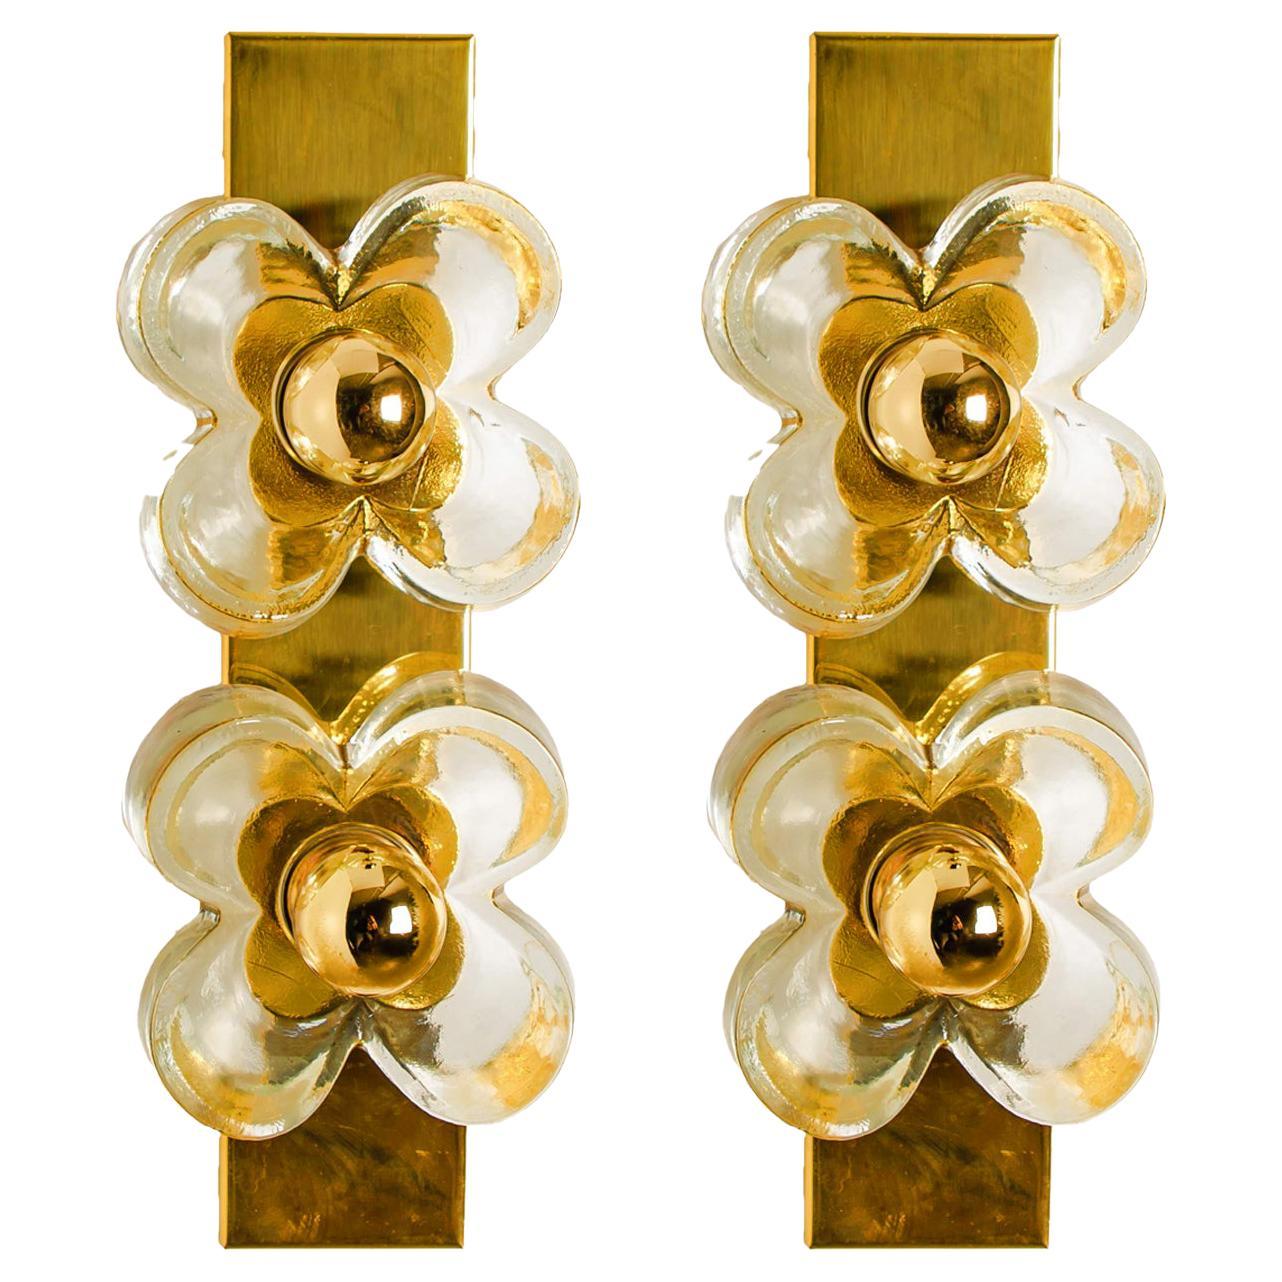 Paire d'appliques à fleurs, en laiton et verre par Sische Lighting, vers les années 1970, Allemagne. Chacune de ces appliques est composée de deux abat-jour en verre vissés à une base carrée en laiton par l'intermédiaire d'anneaux métalliques ronds.